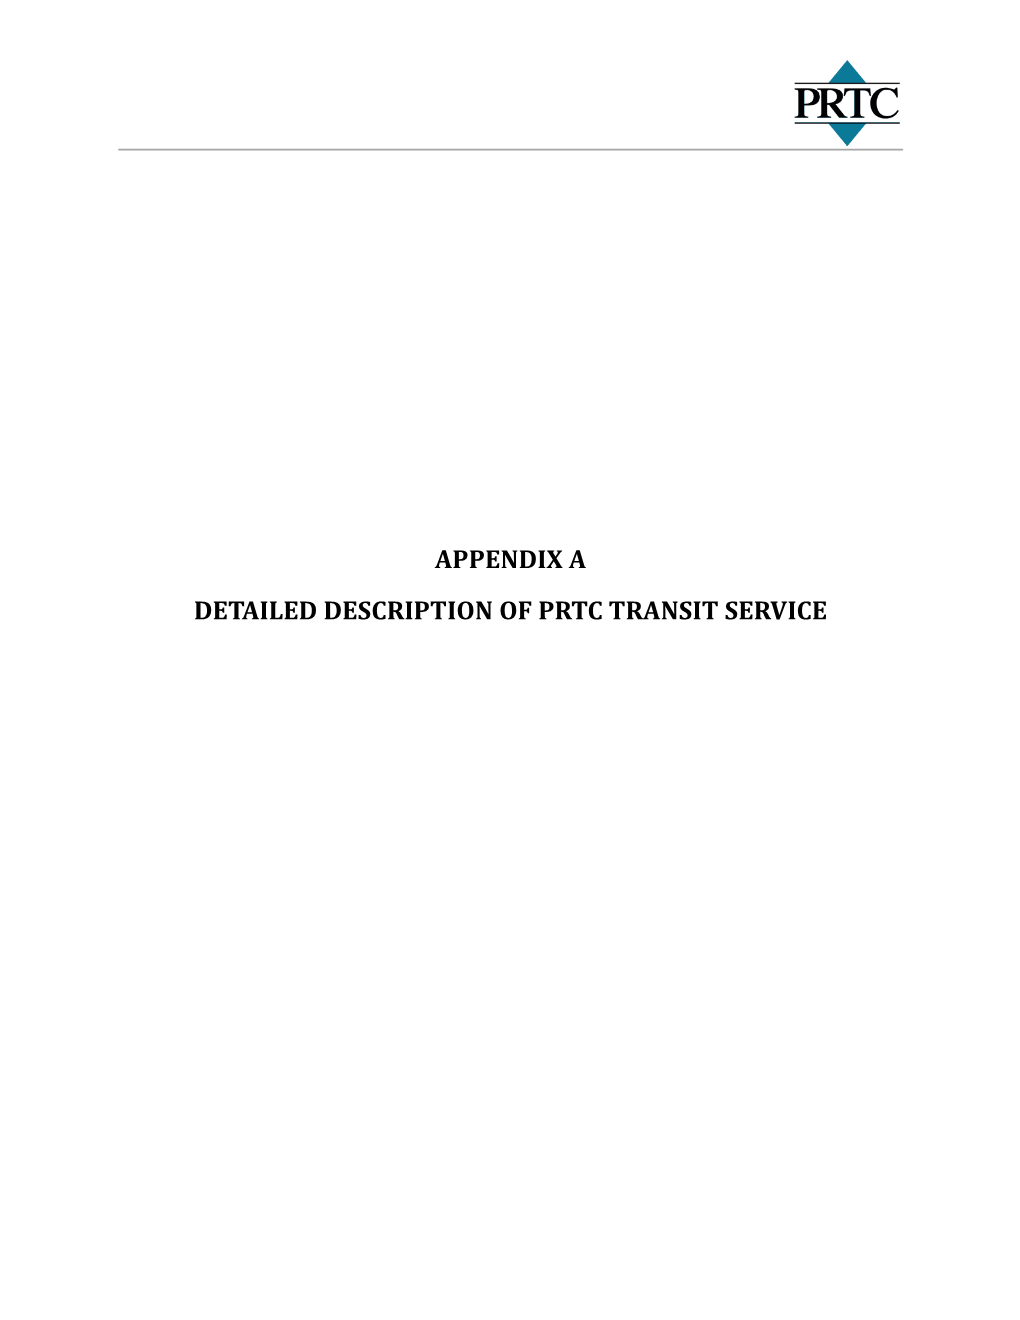 Detailed Description of Prtc Transit Service